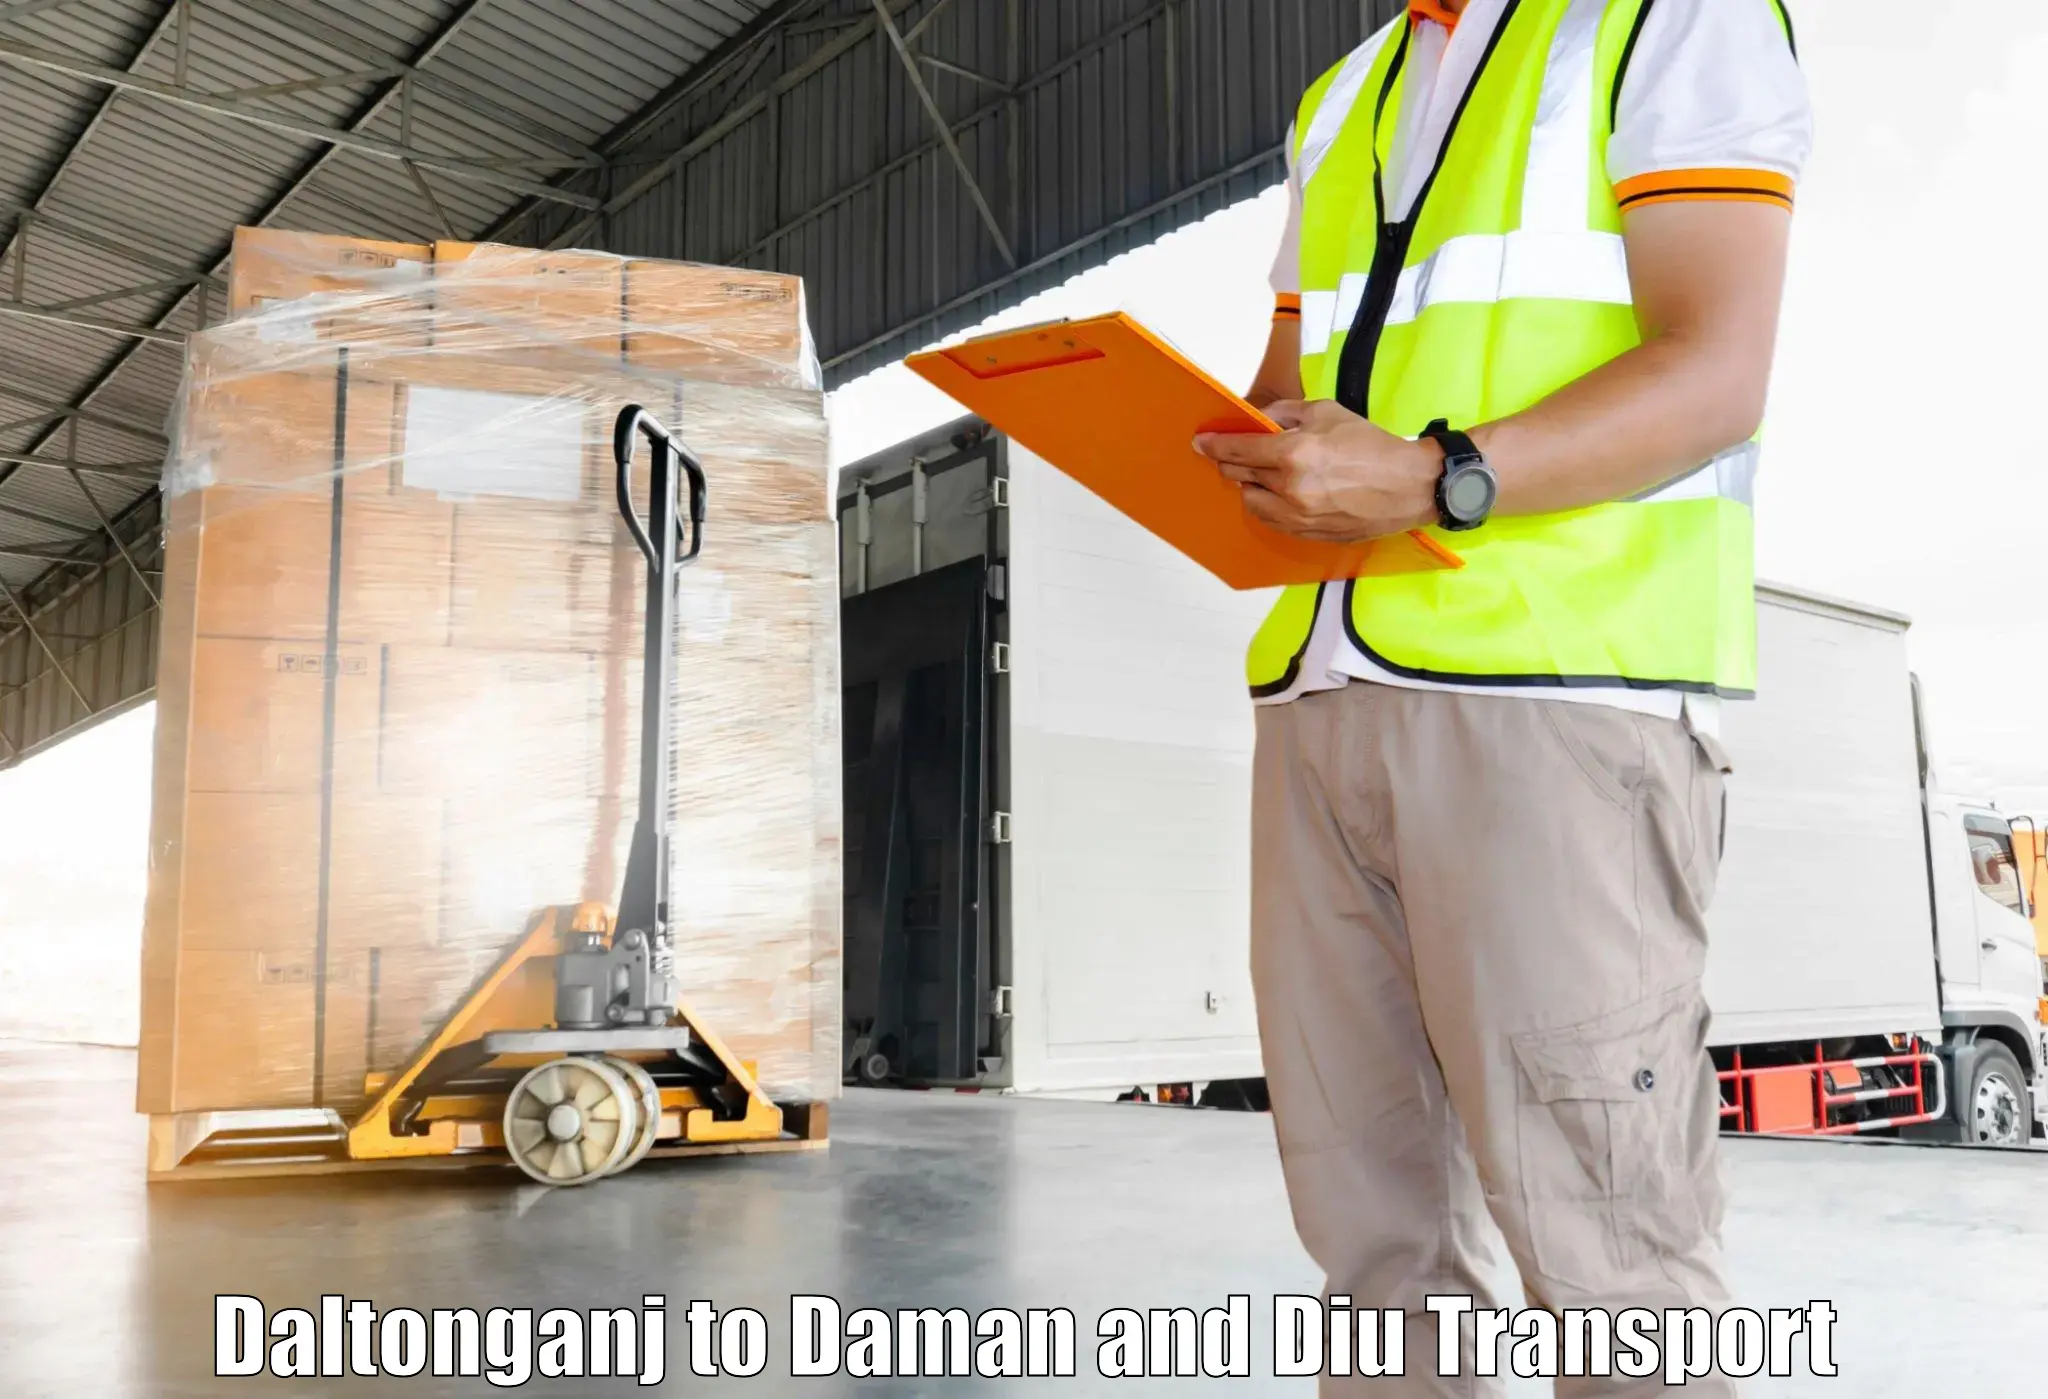 International cargo transportation services in Daltonganj to Daman